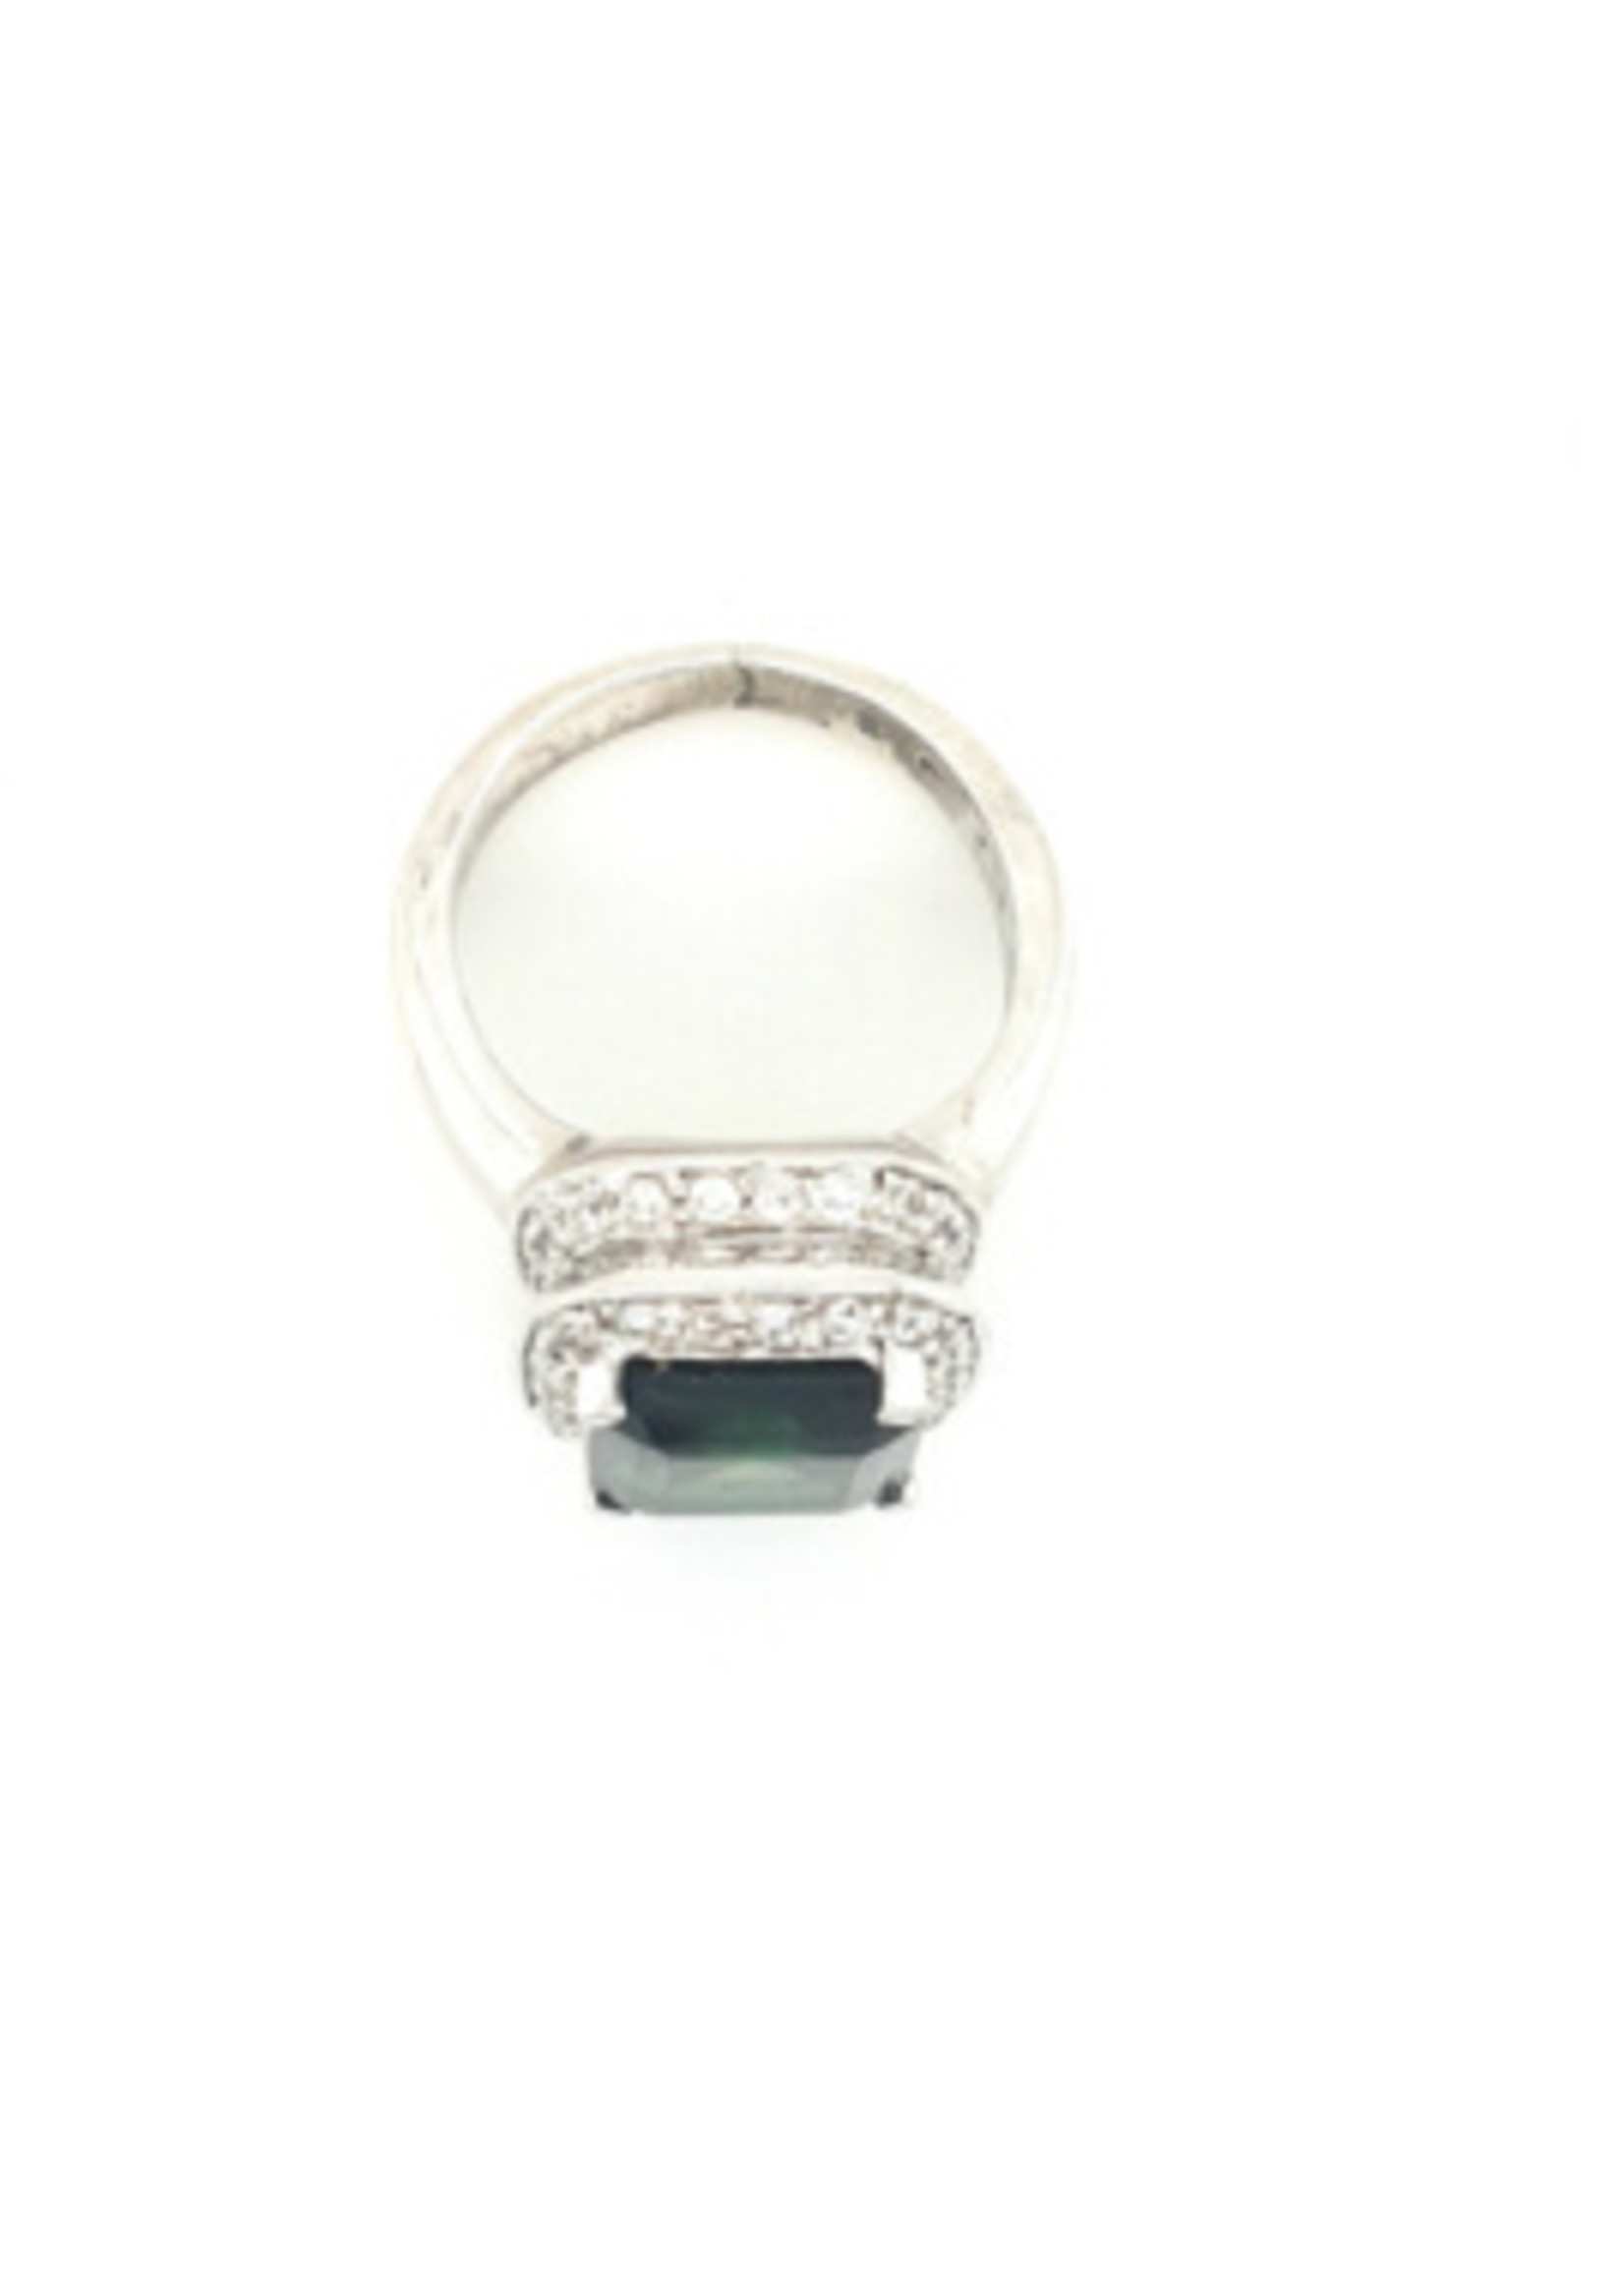 Vintage & Occasion Occasion zilveren ring rijkelijk bezet met zirkonia's en een groen gele steen